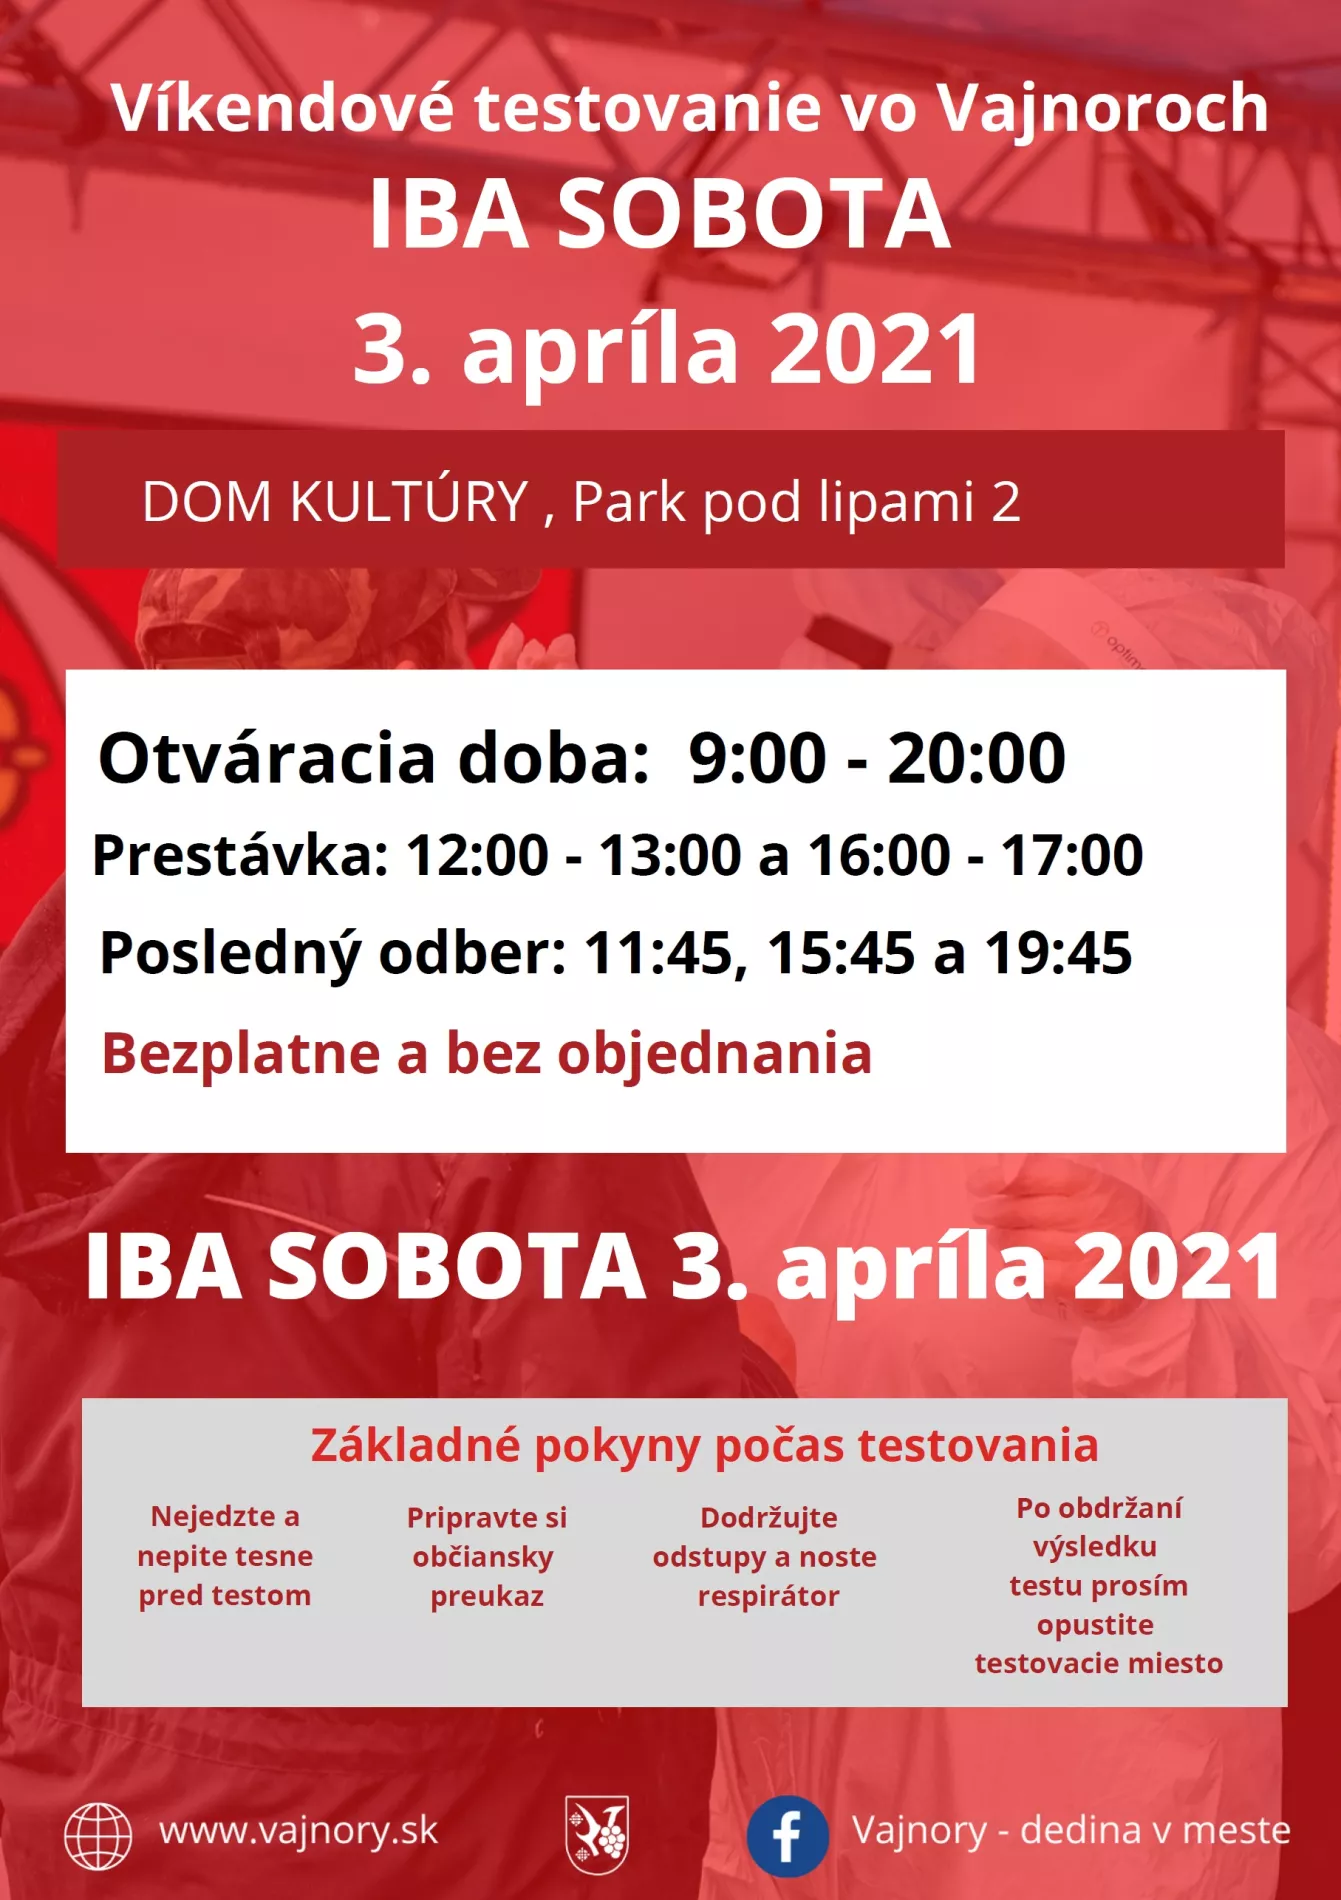 Najbližší víkend bude testovanie vo Vajnoroch bez objednania IBA V SOBOTU 3. apríla 2021